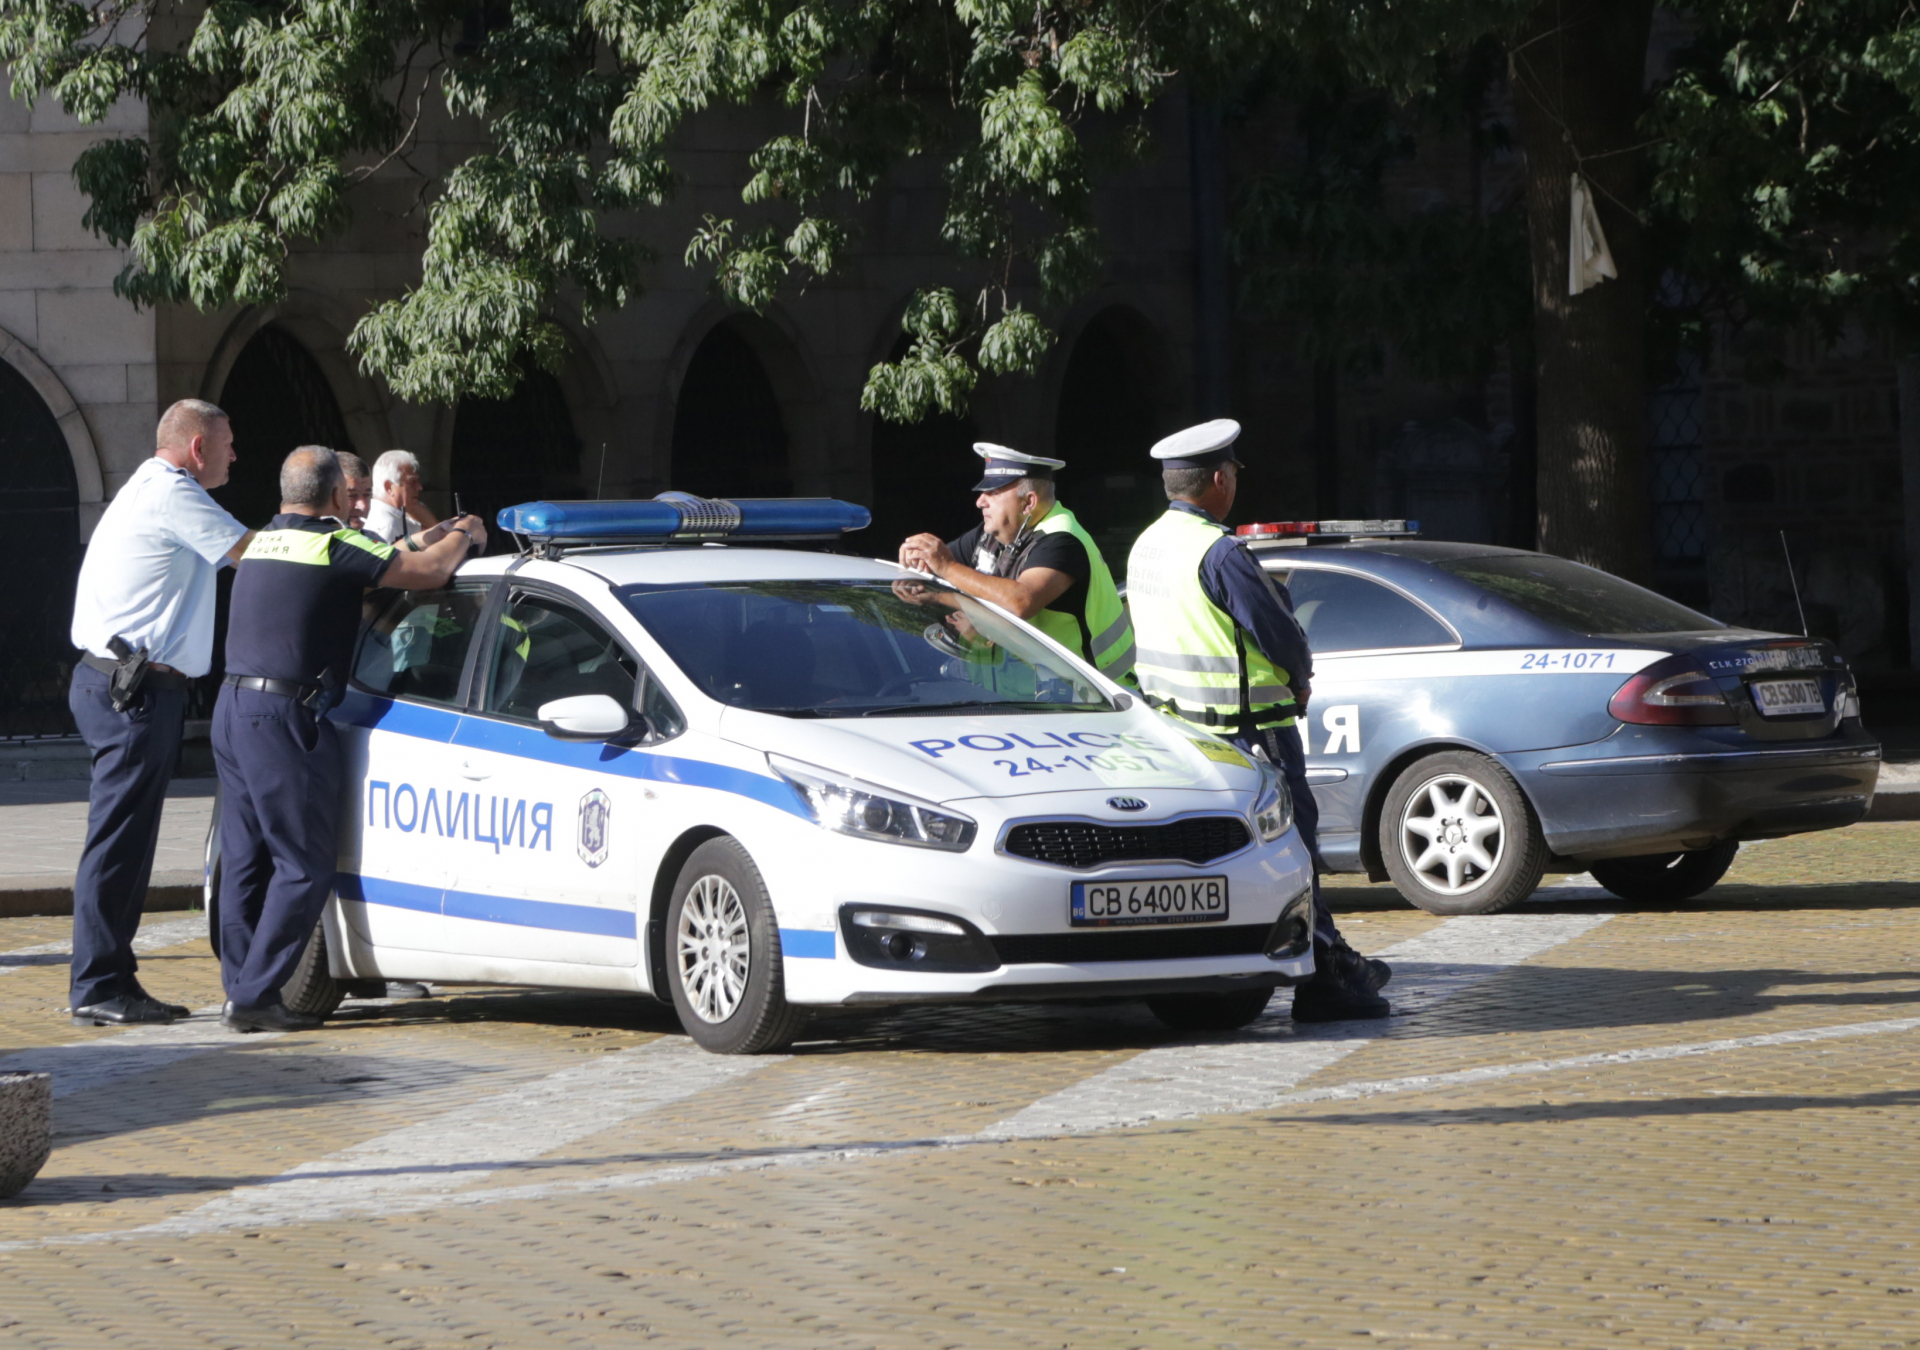 Бандит задигна близо 8 бона от жена на автогара в София